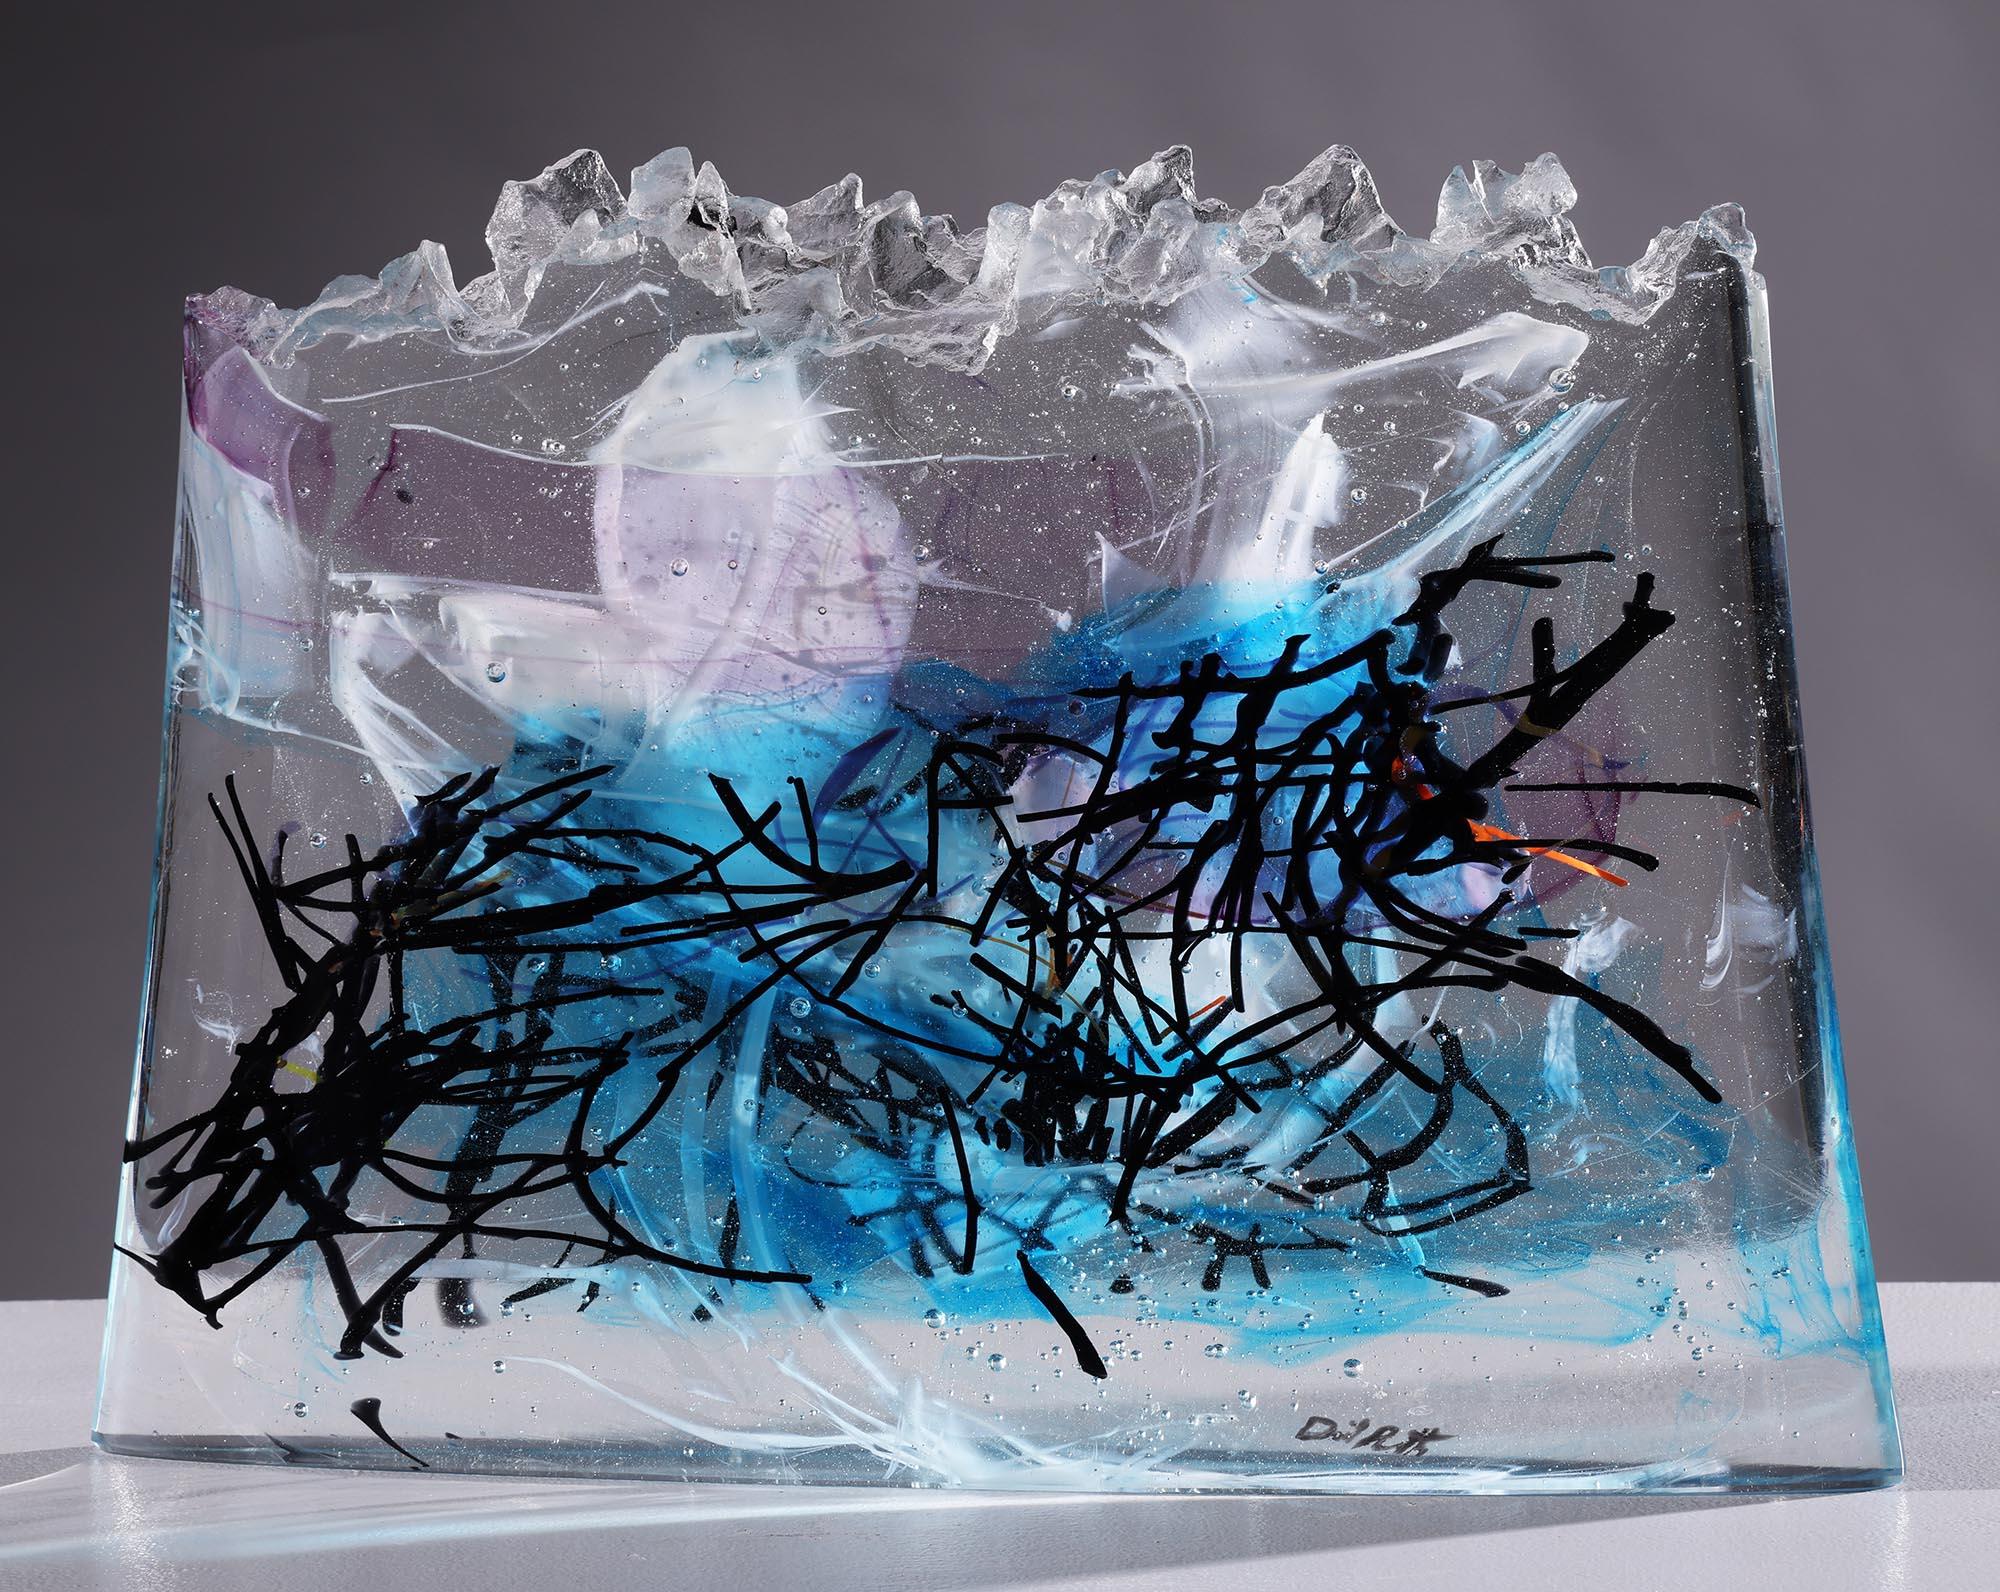 Upolu" est une sculpture abstraite contemporaine en verre coulé de David Ruth, issue de sa série Internal Space. David voulait capturer la qualité picturale de ses précédentes pièces internes coulées, mais dans une forme solide sur pied. Cette